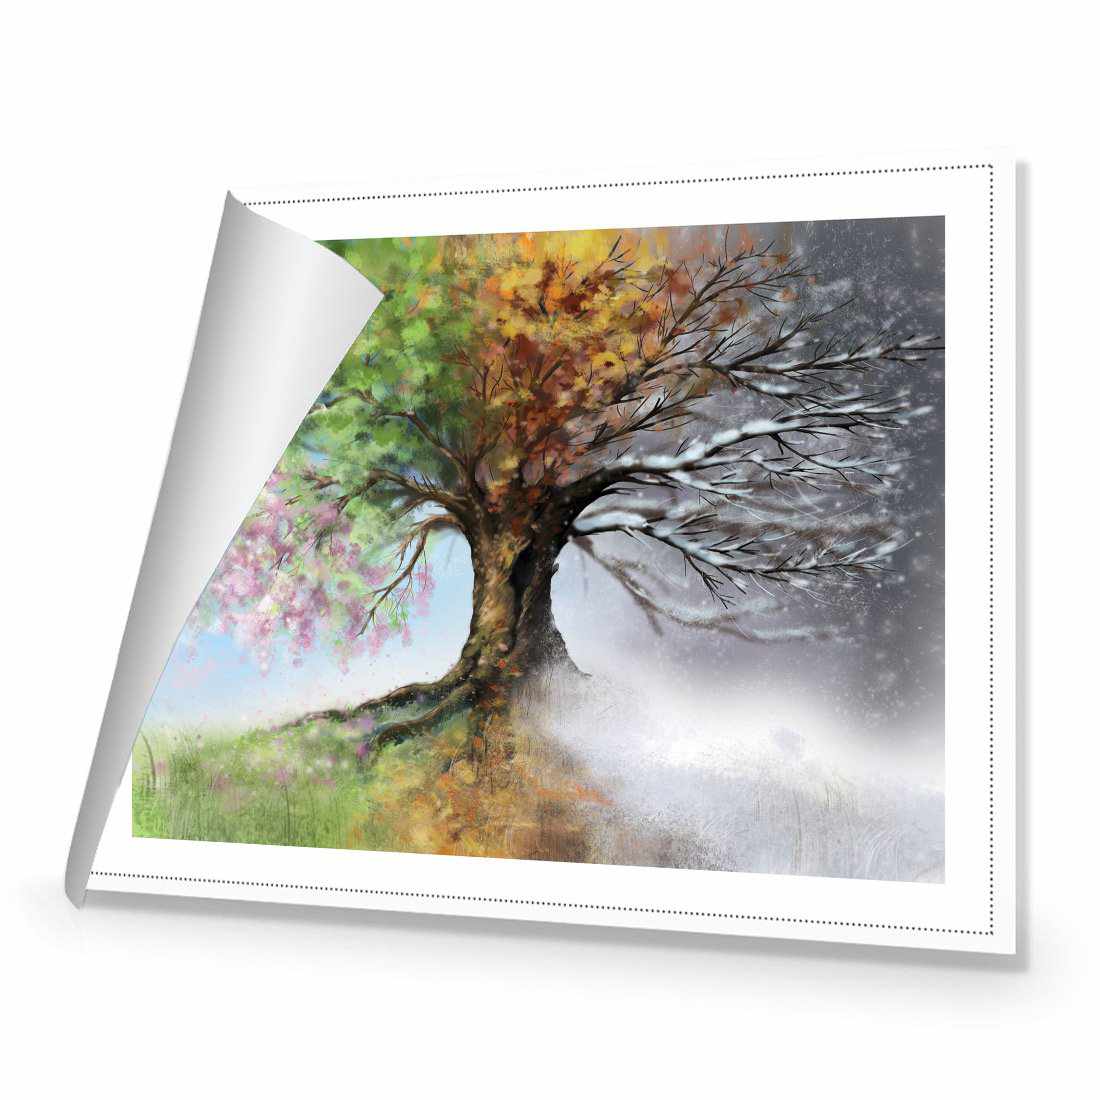 Mystical Tree Canvas Art-Canvas-Wall Art Designs-45x30cm-Rolled Canvas-Wall Art Designs